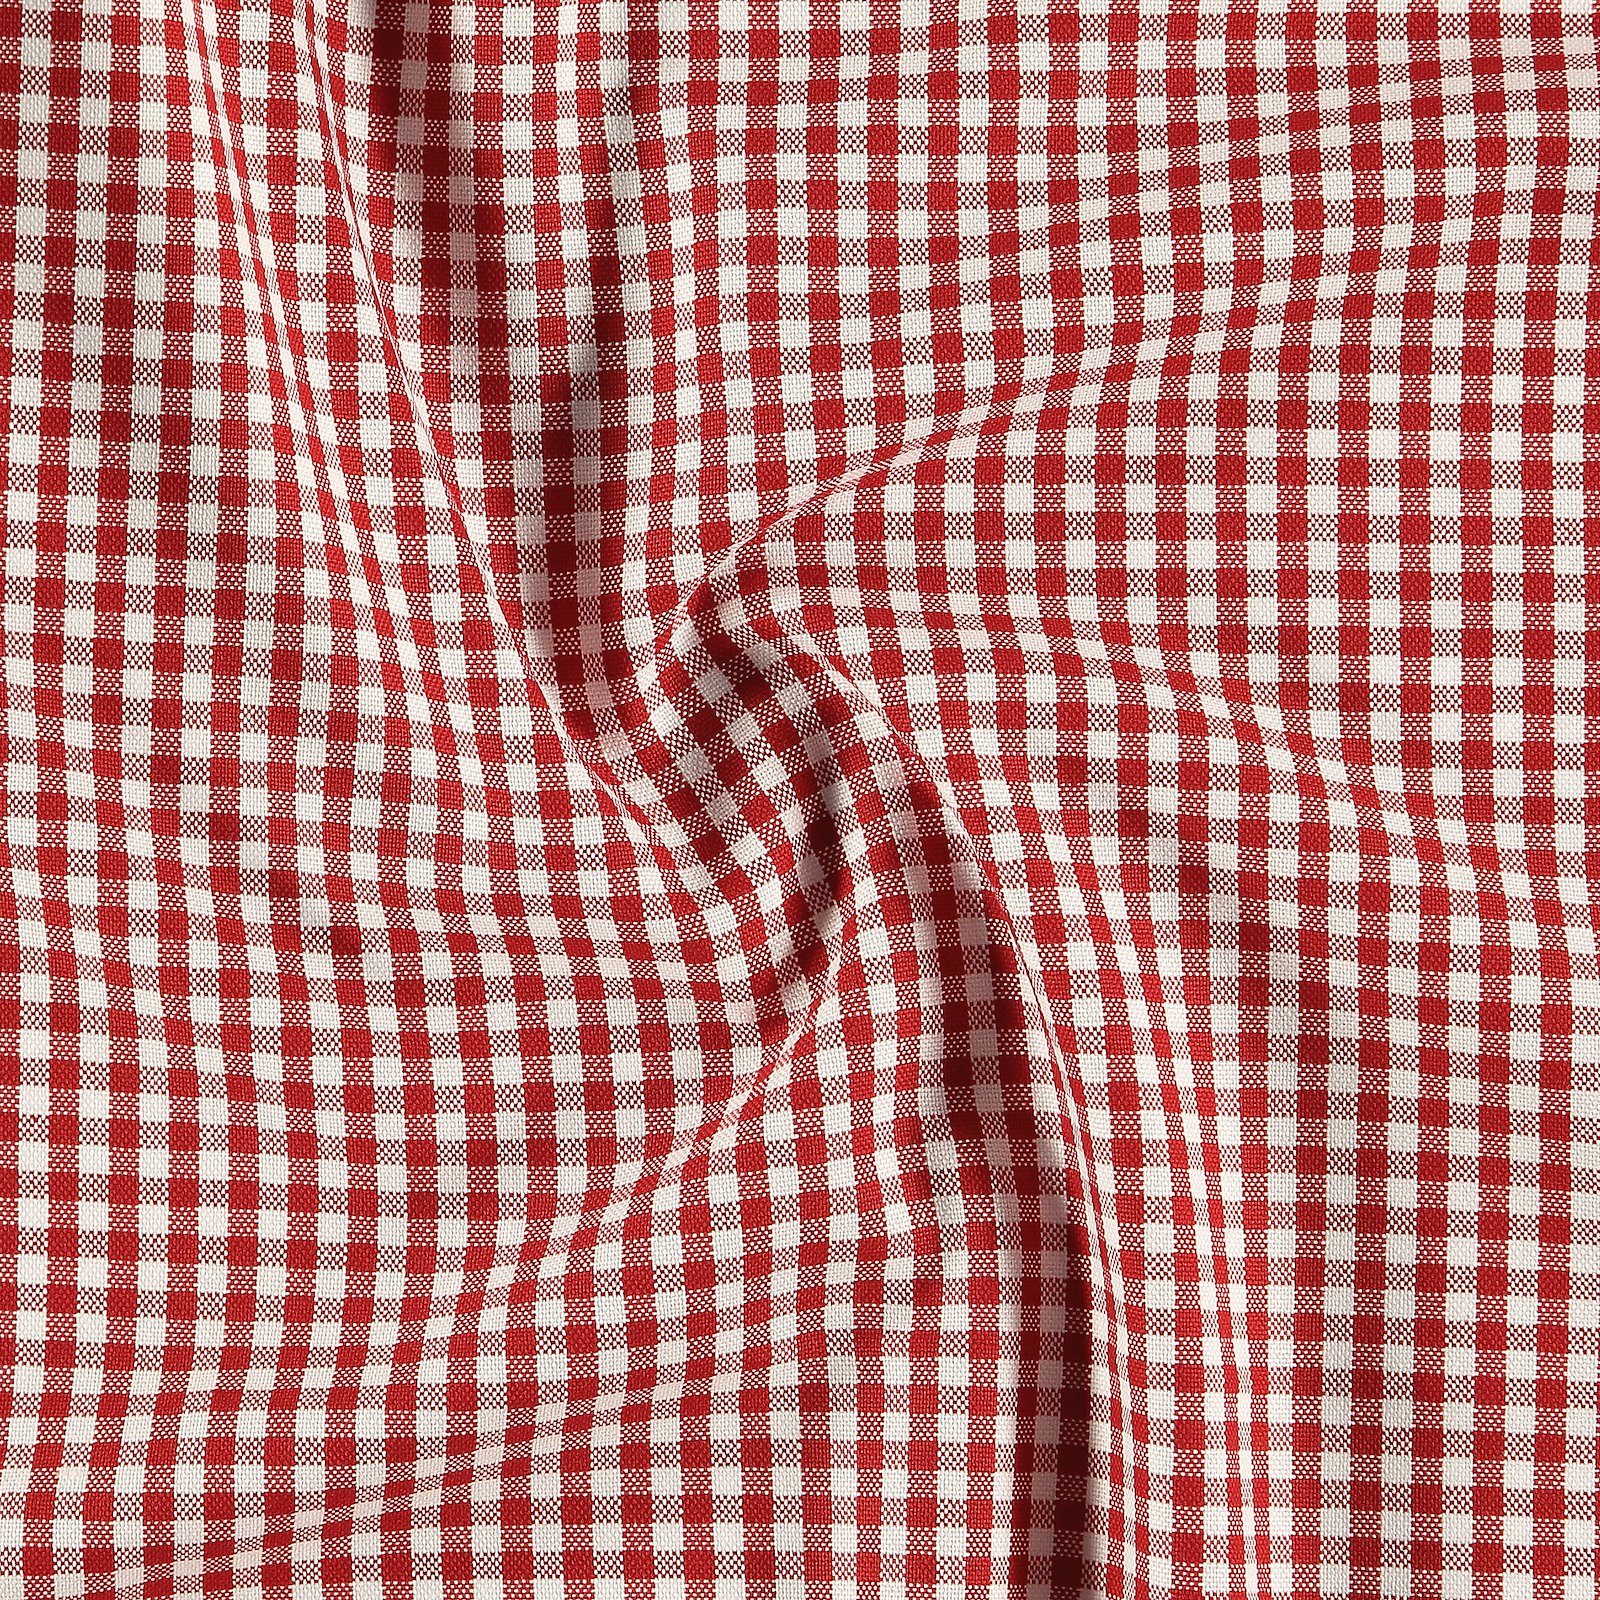 Baumwolle, rot/weiß kariert garngefärbt 810091_pack